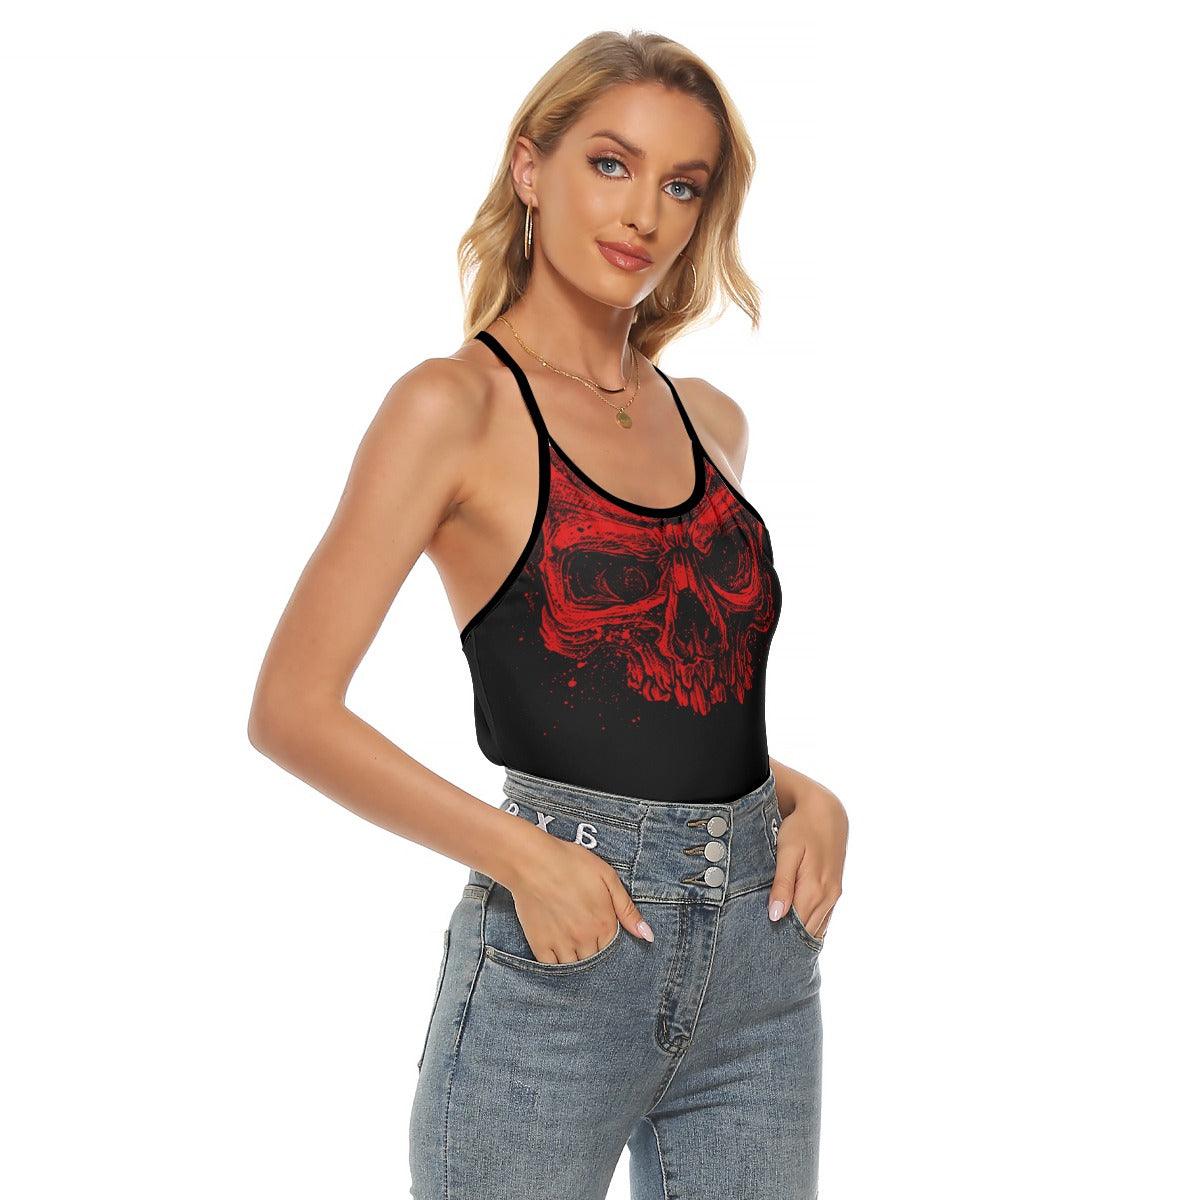 Red Skull Criss-Cross Open Back Tank Top, Hot T-Shirt For Women - Wonder Skull